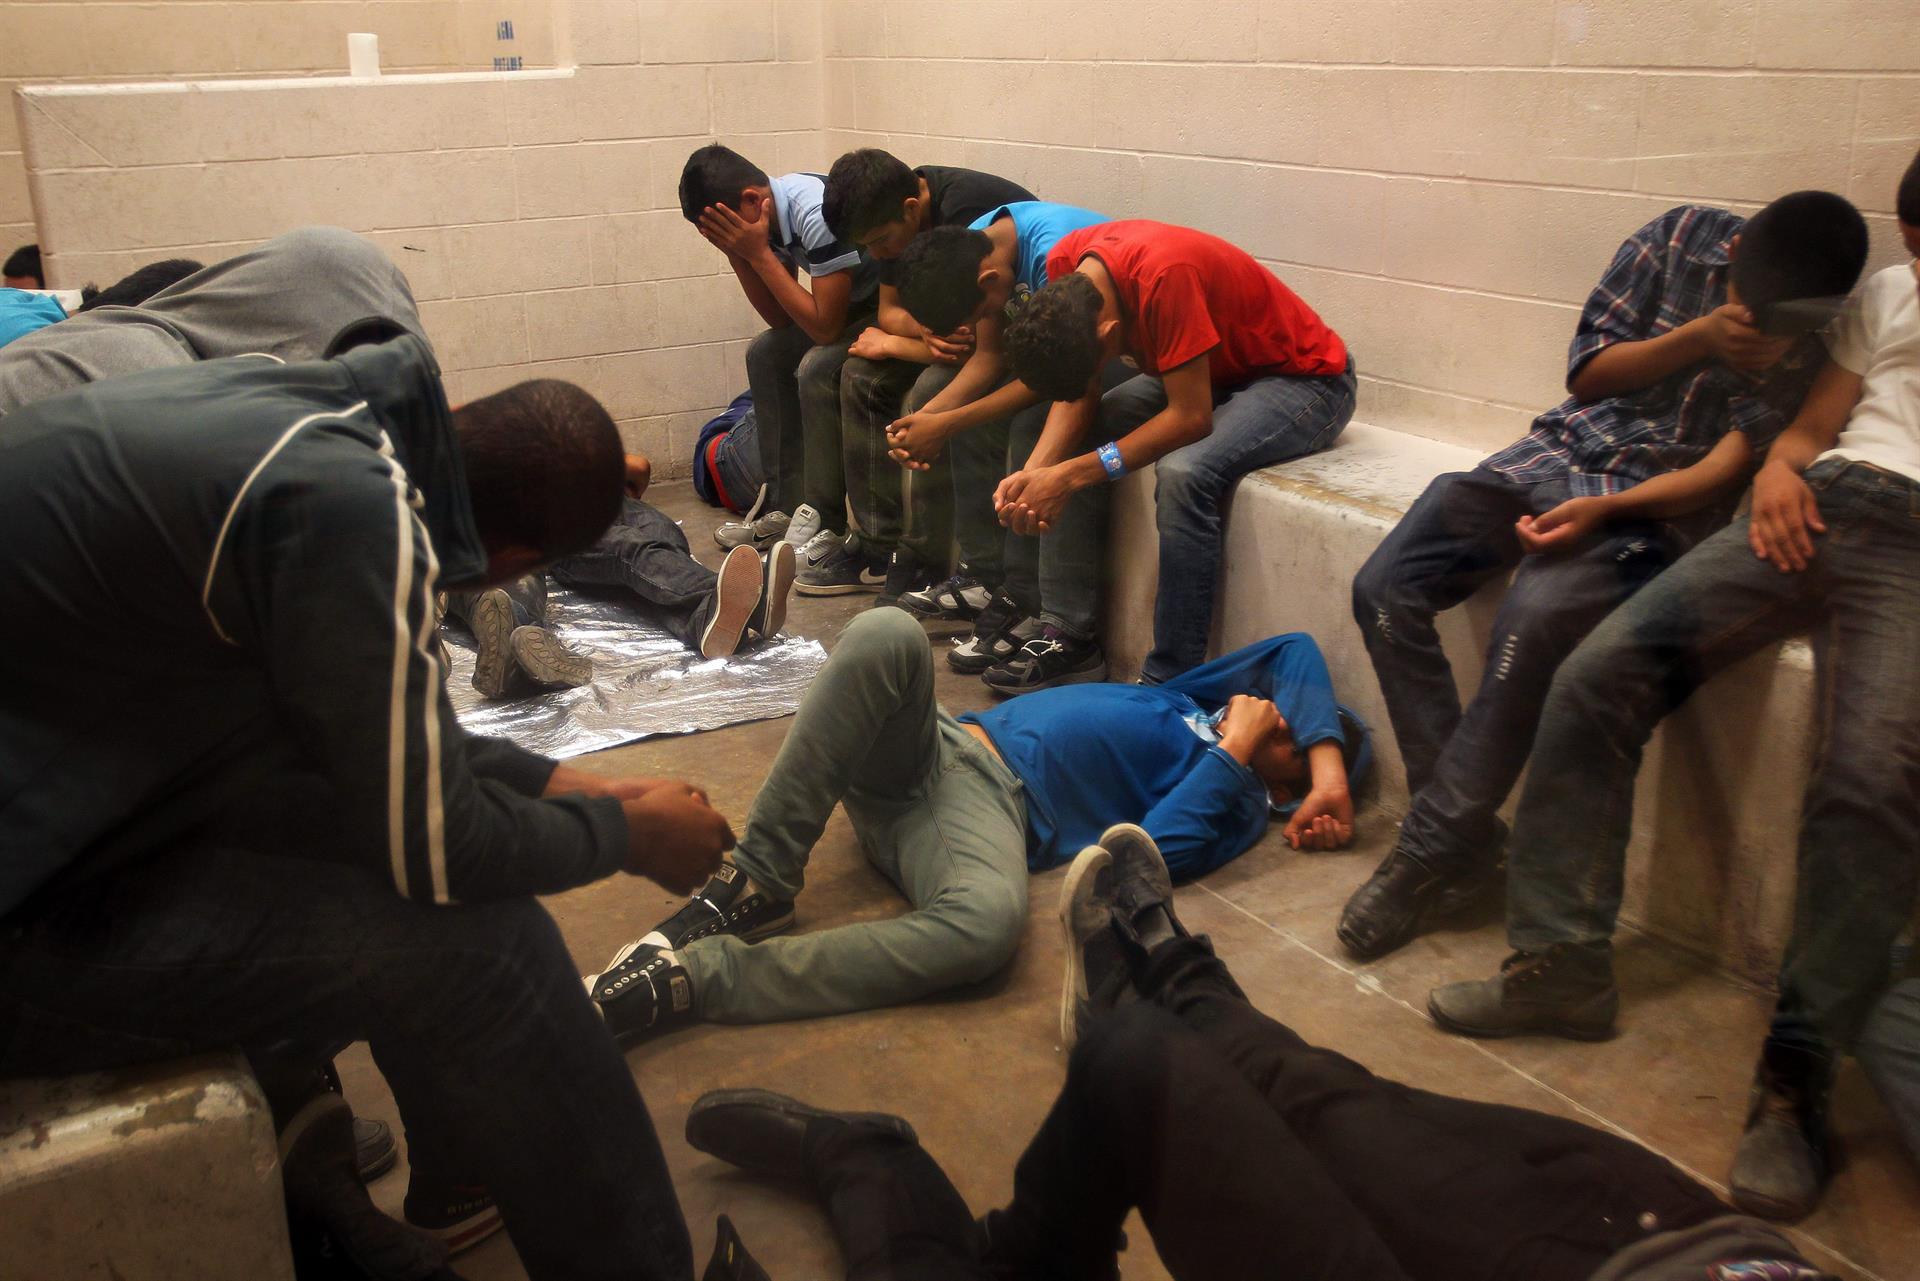 Vista de inmigrantes que han cruzado ilegalmente la frontera, detenidos para ser procesados dentro de una estación de la Patrulla Fronteriza de McAllen, Texas (EEUU). EFE/Rick Loomis
